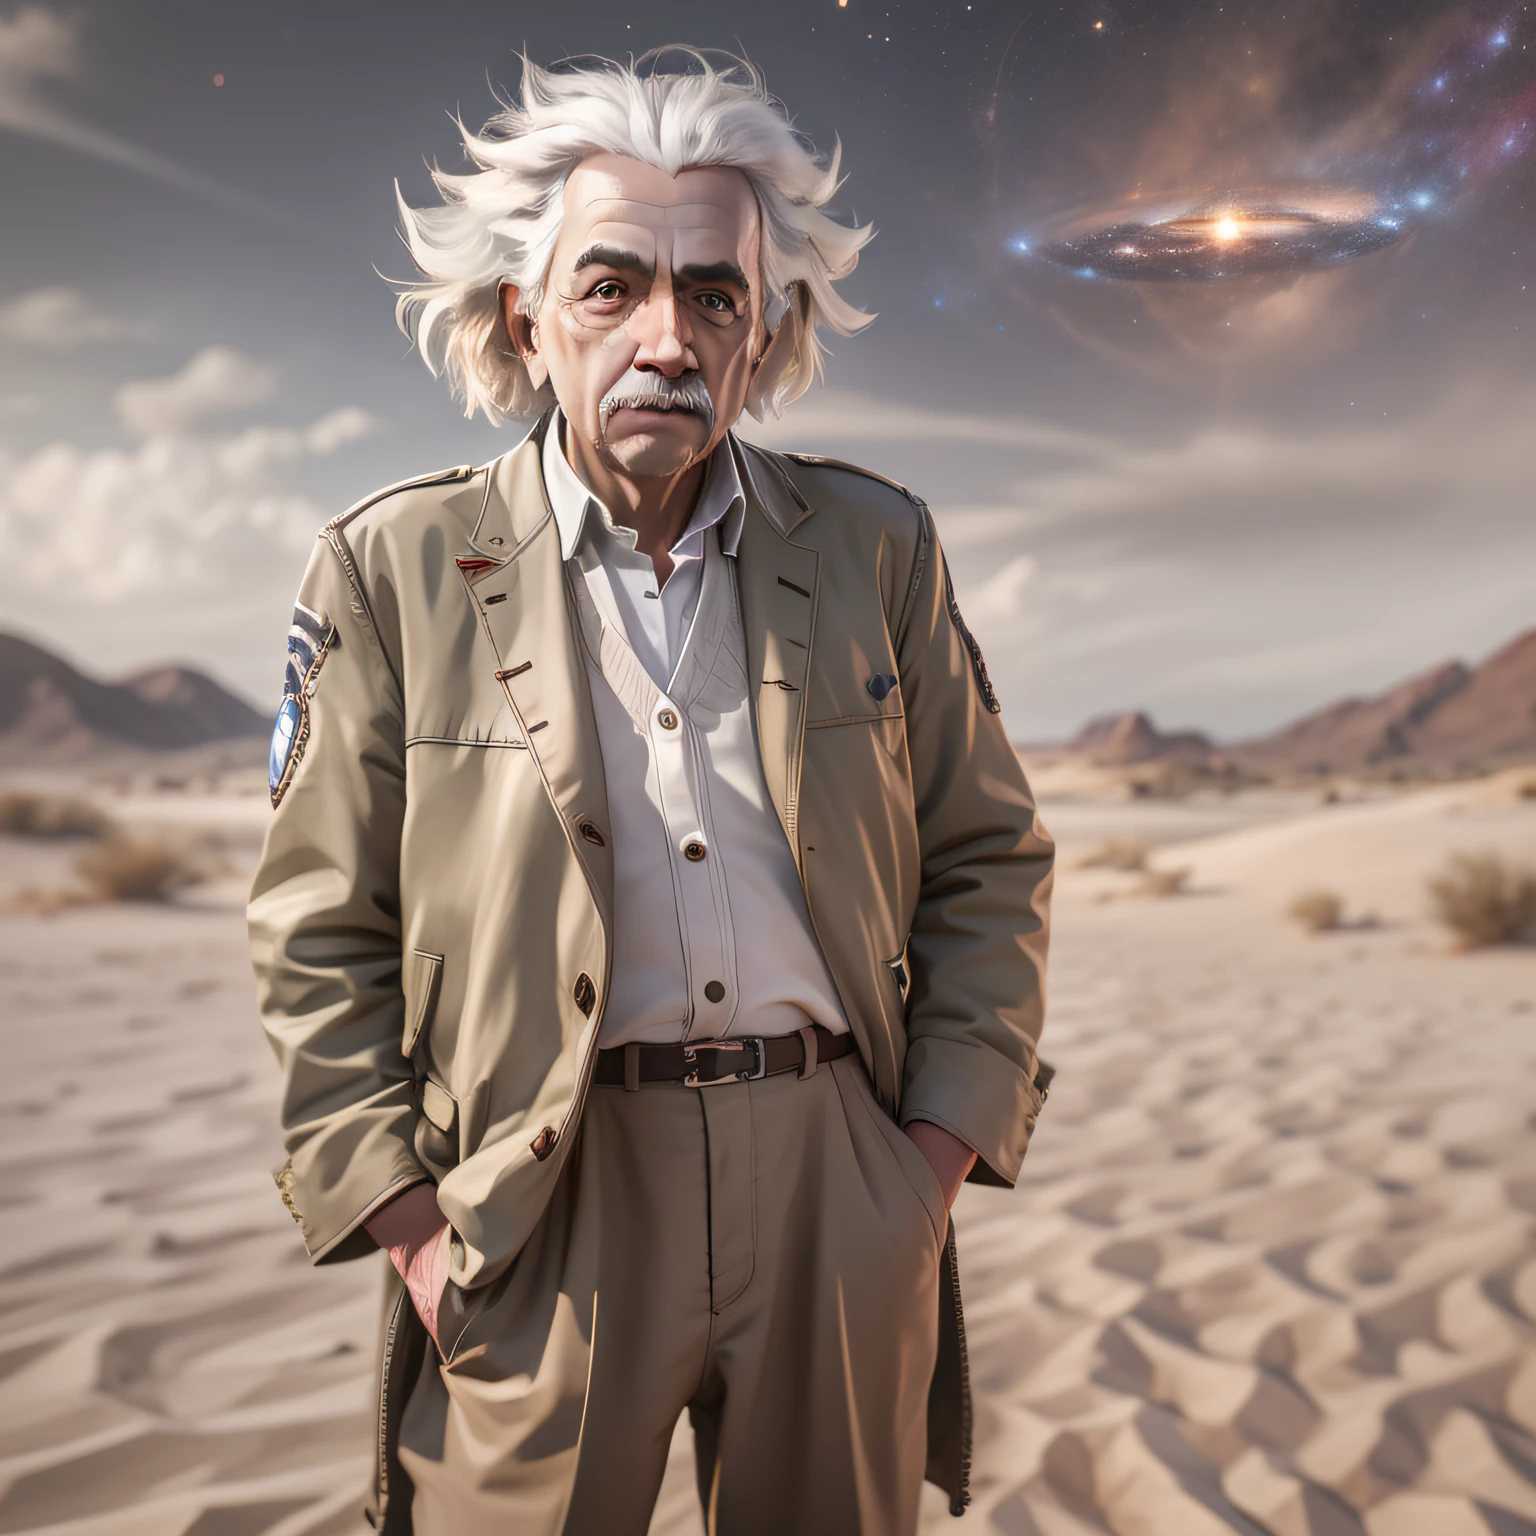 阿尔伯特·爱因斯坦的全身肖像, 超现实主义, 犹如神明, 沙漠衣服, 超详细, 使用哈苏 H4D 200MS 数码相机拍摄, Mitakon Speedmaster 65mm f/ 1. 4 XCD, 星系, 立体效果, 菲涅尔照明